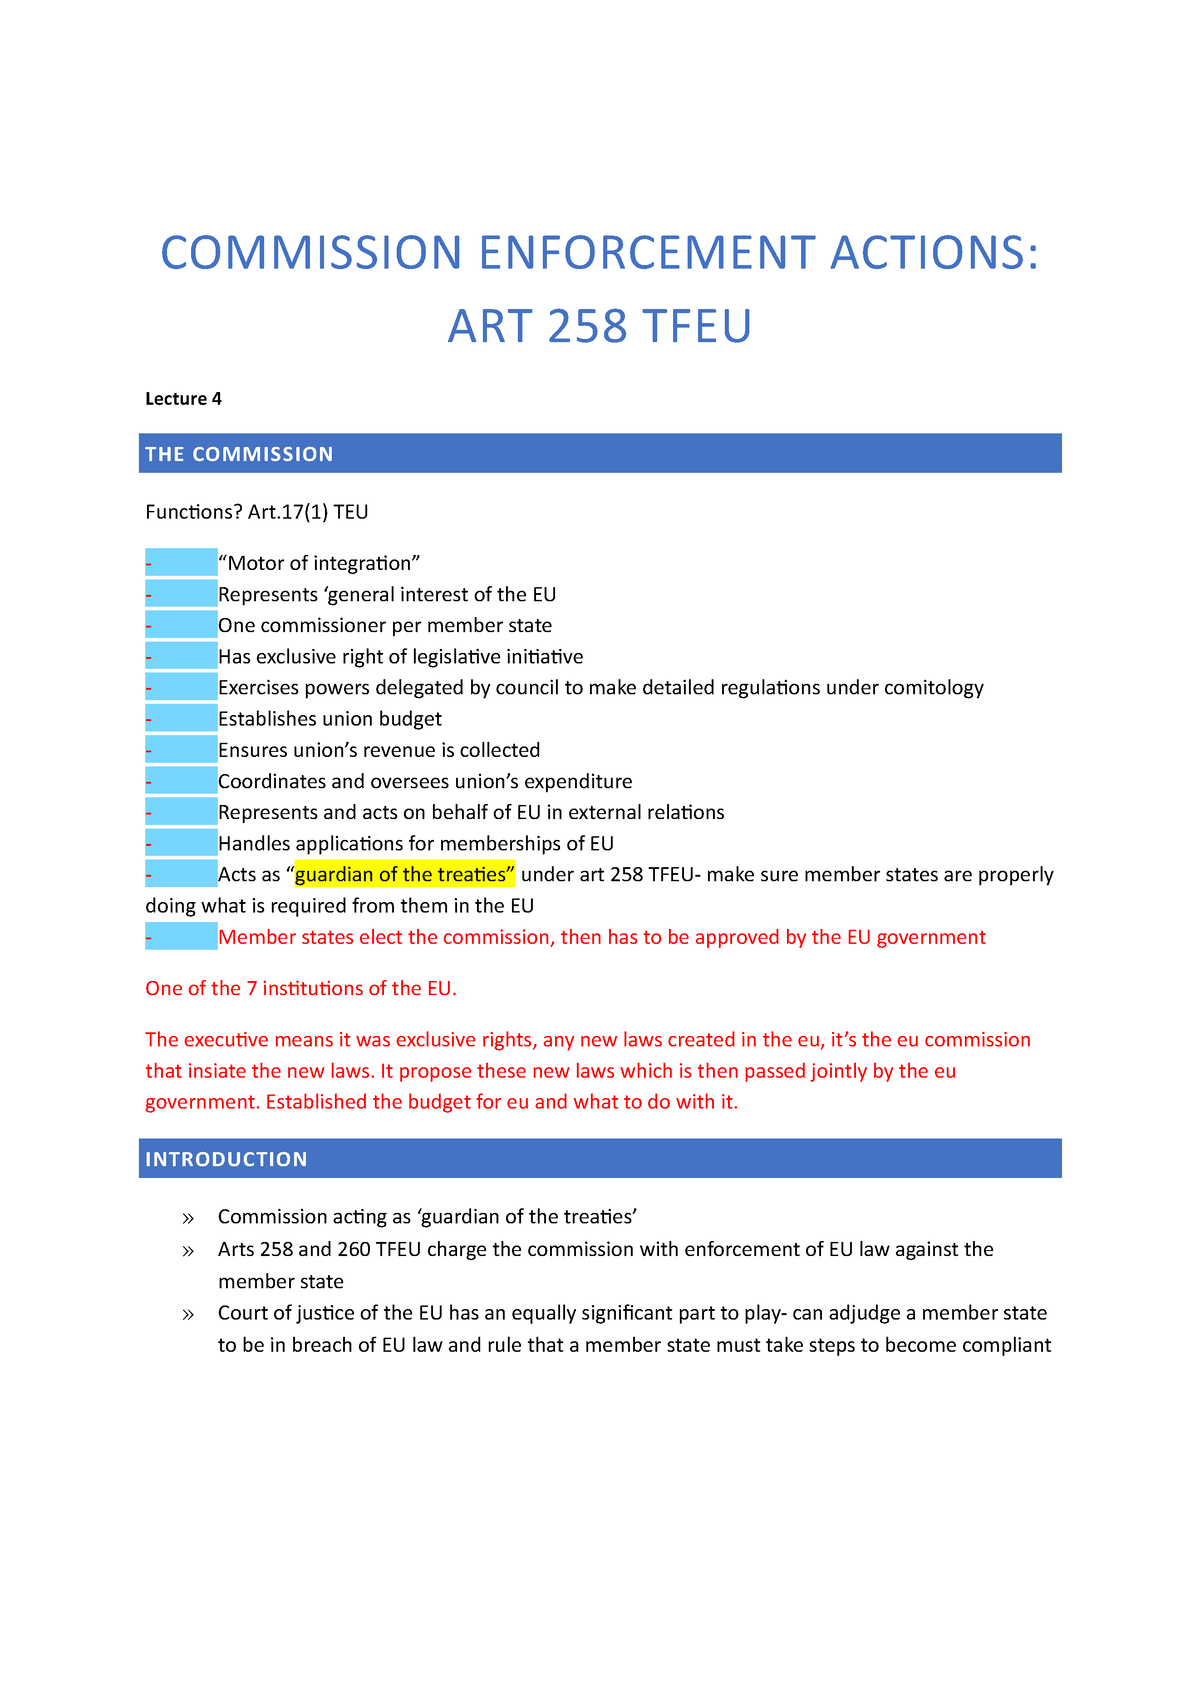 Commission enforcement action art 258 TFEU COMMISSION ENFORCEMENT